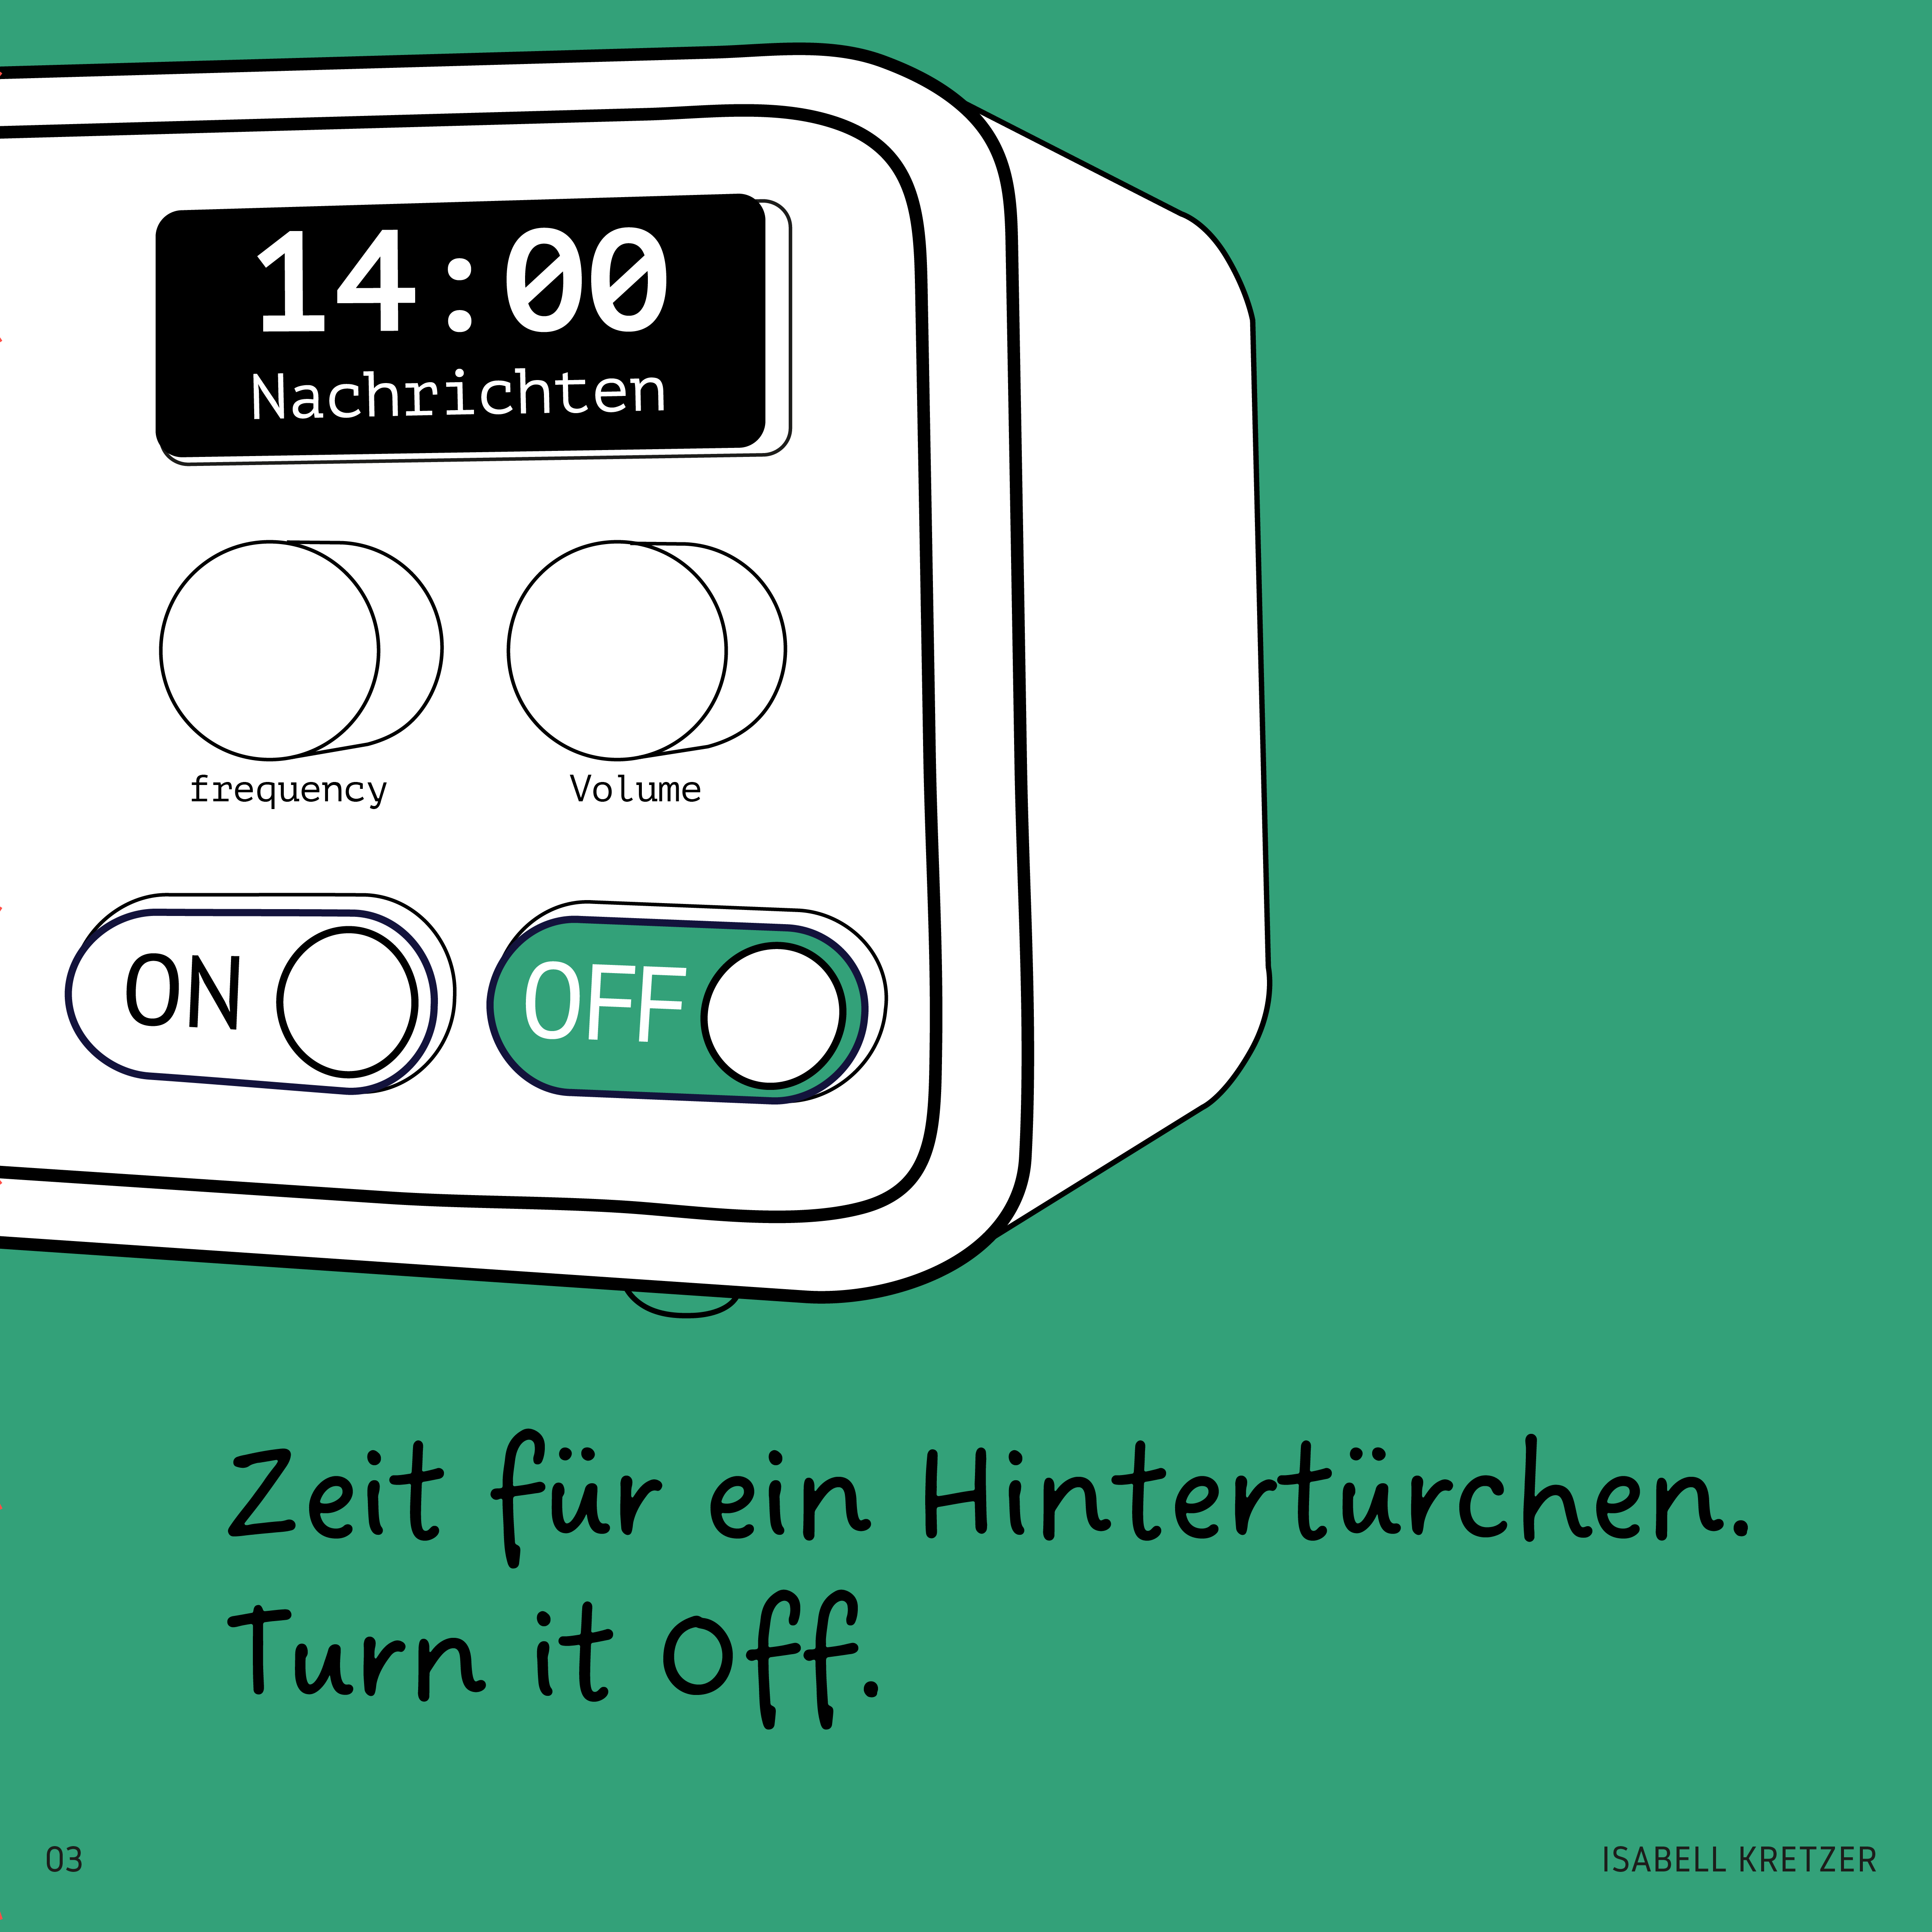 Rechter Teil von Illustration mit Radio mit Grünem Off-Knopf. Darunter steht geschrieben: Zeit für ein Hintertürchen. Turn it off.